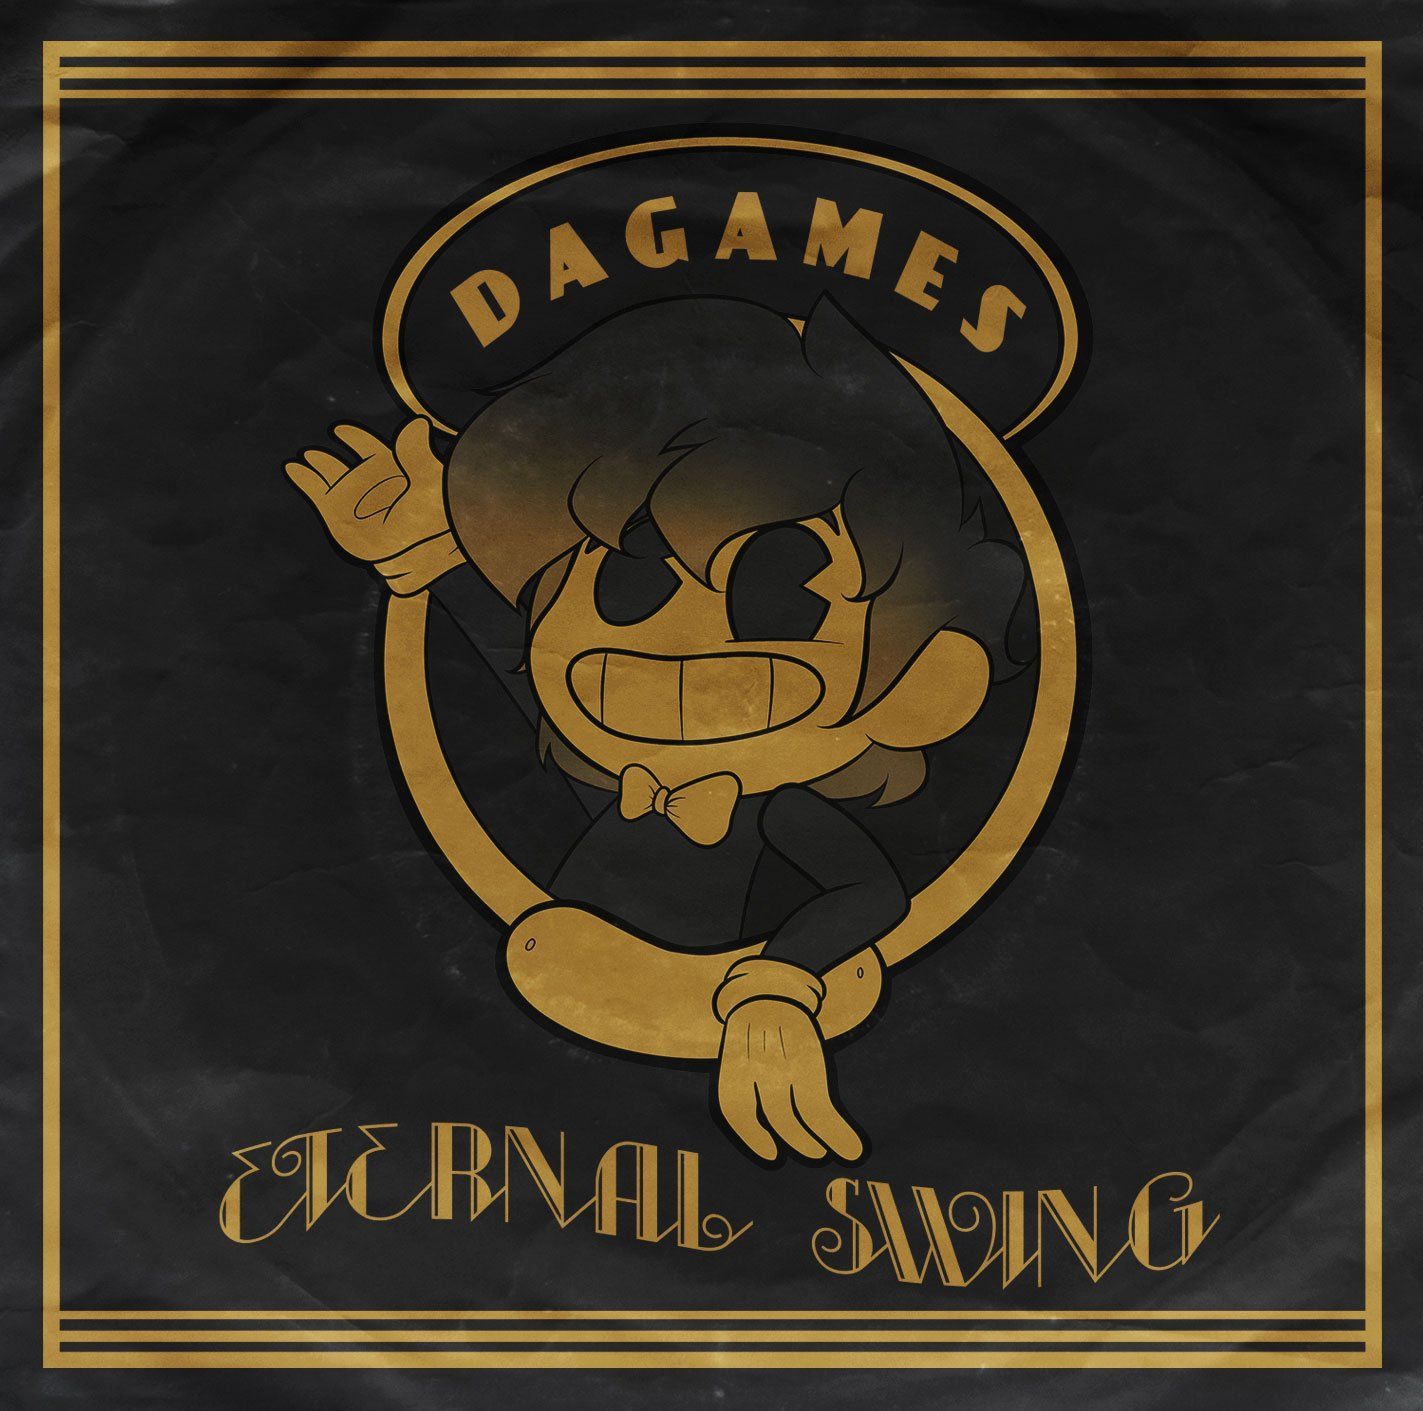 Imagem do álbum Eternal Swing do(a) artista DAGames